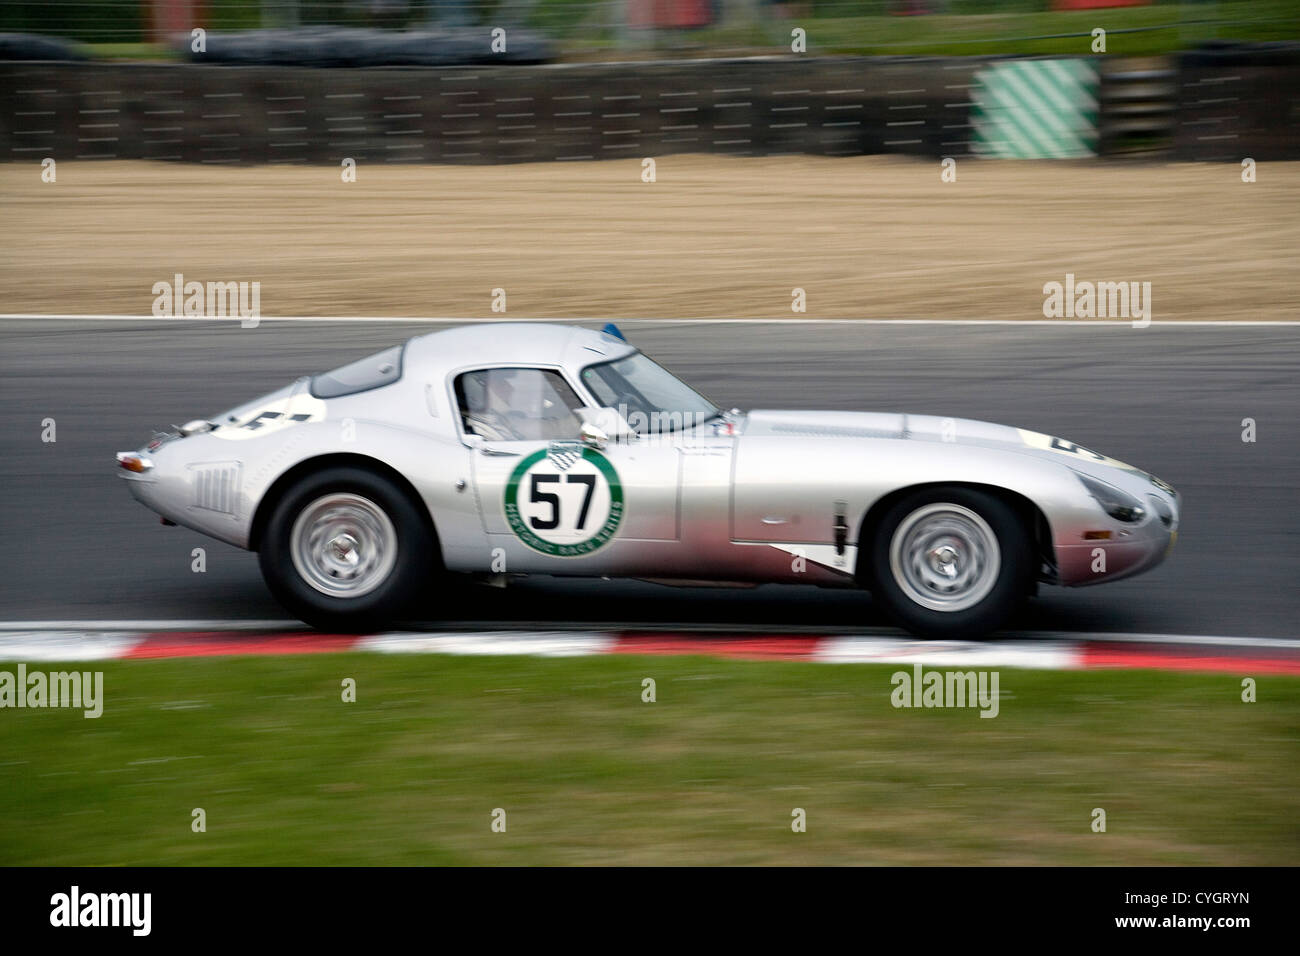 A hardtop E-type Jaguar racing at Brands Hatch racing circuit. Stock Photo